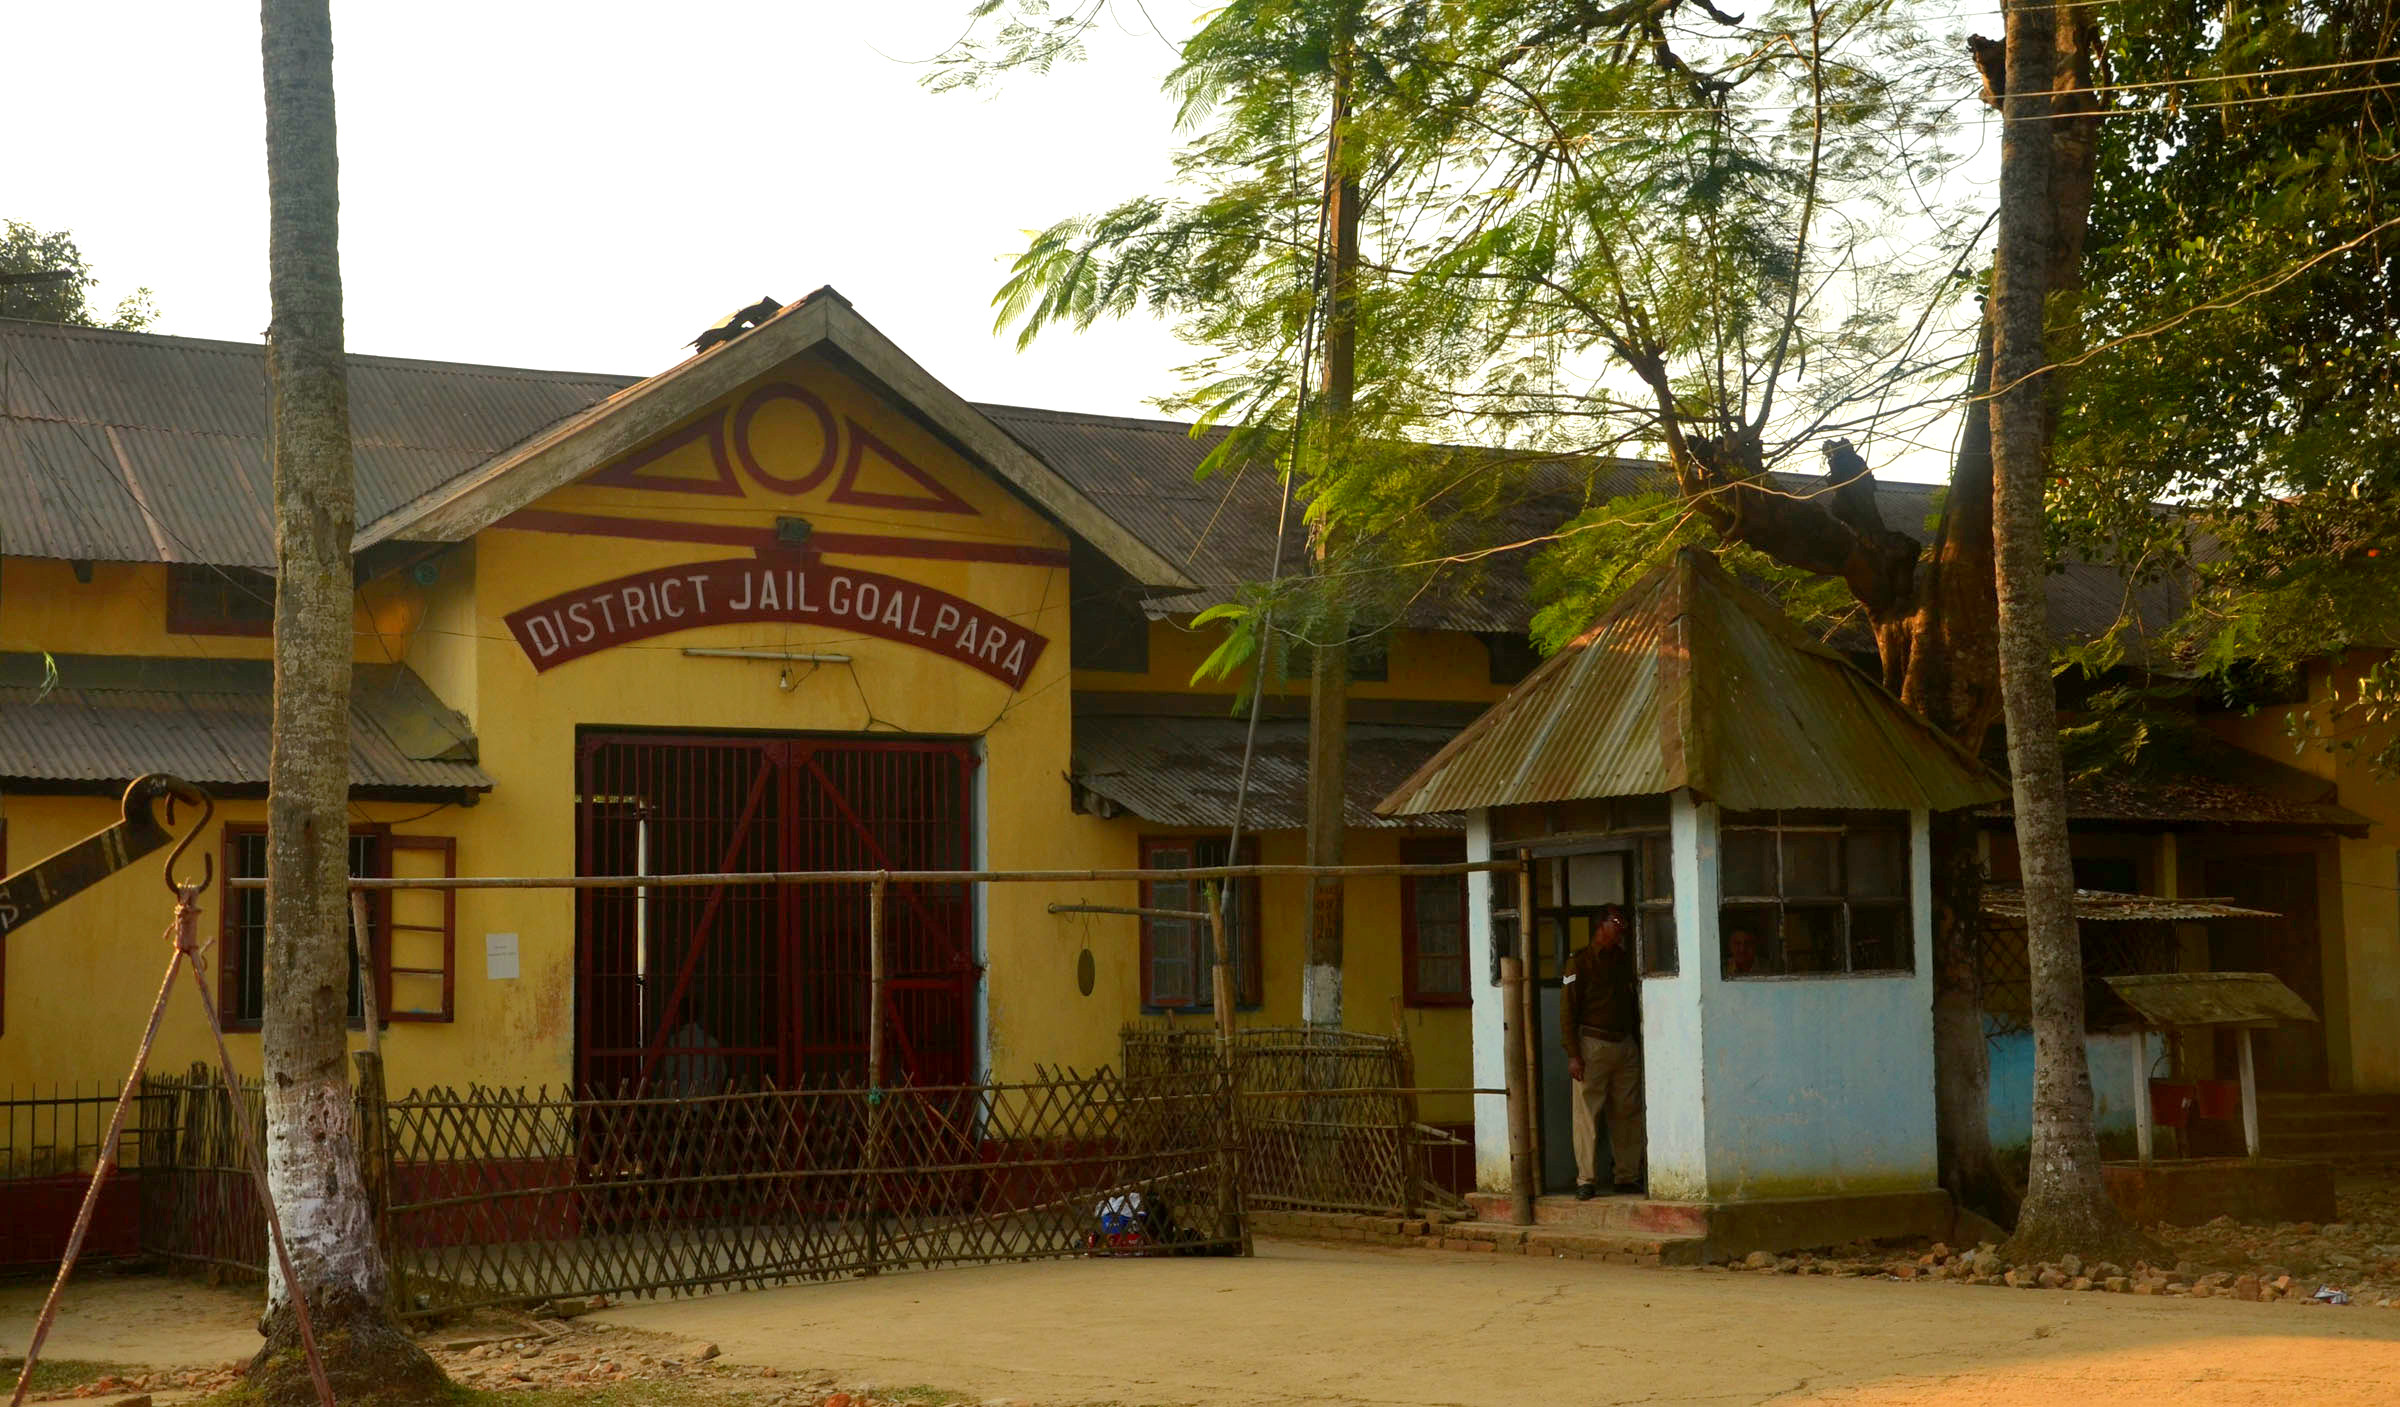 असम सरकार ने डिटेंशन सेंटर का नाम बदलकर ‘ट्रांज़िट कैंप’ किया